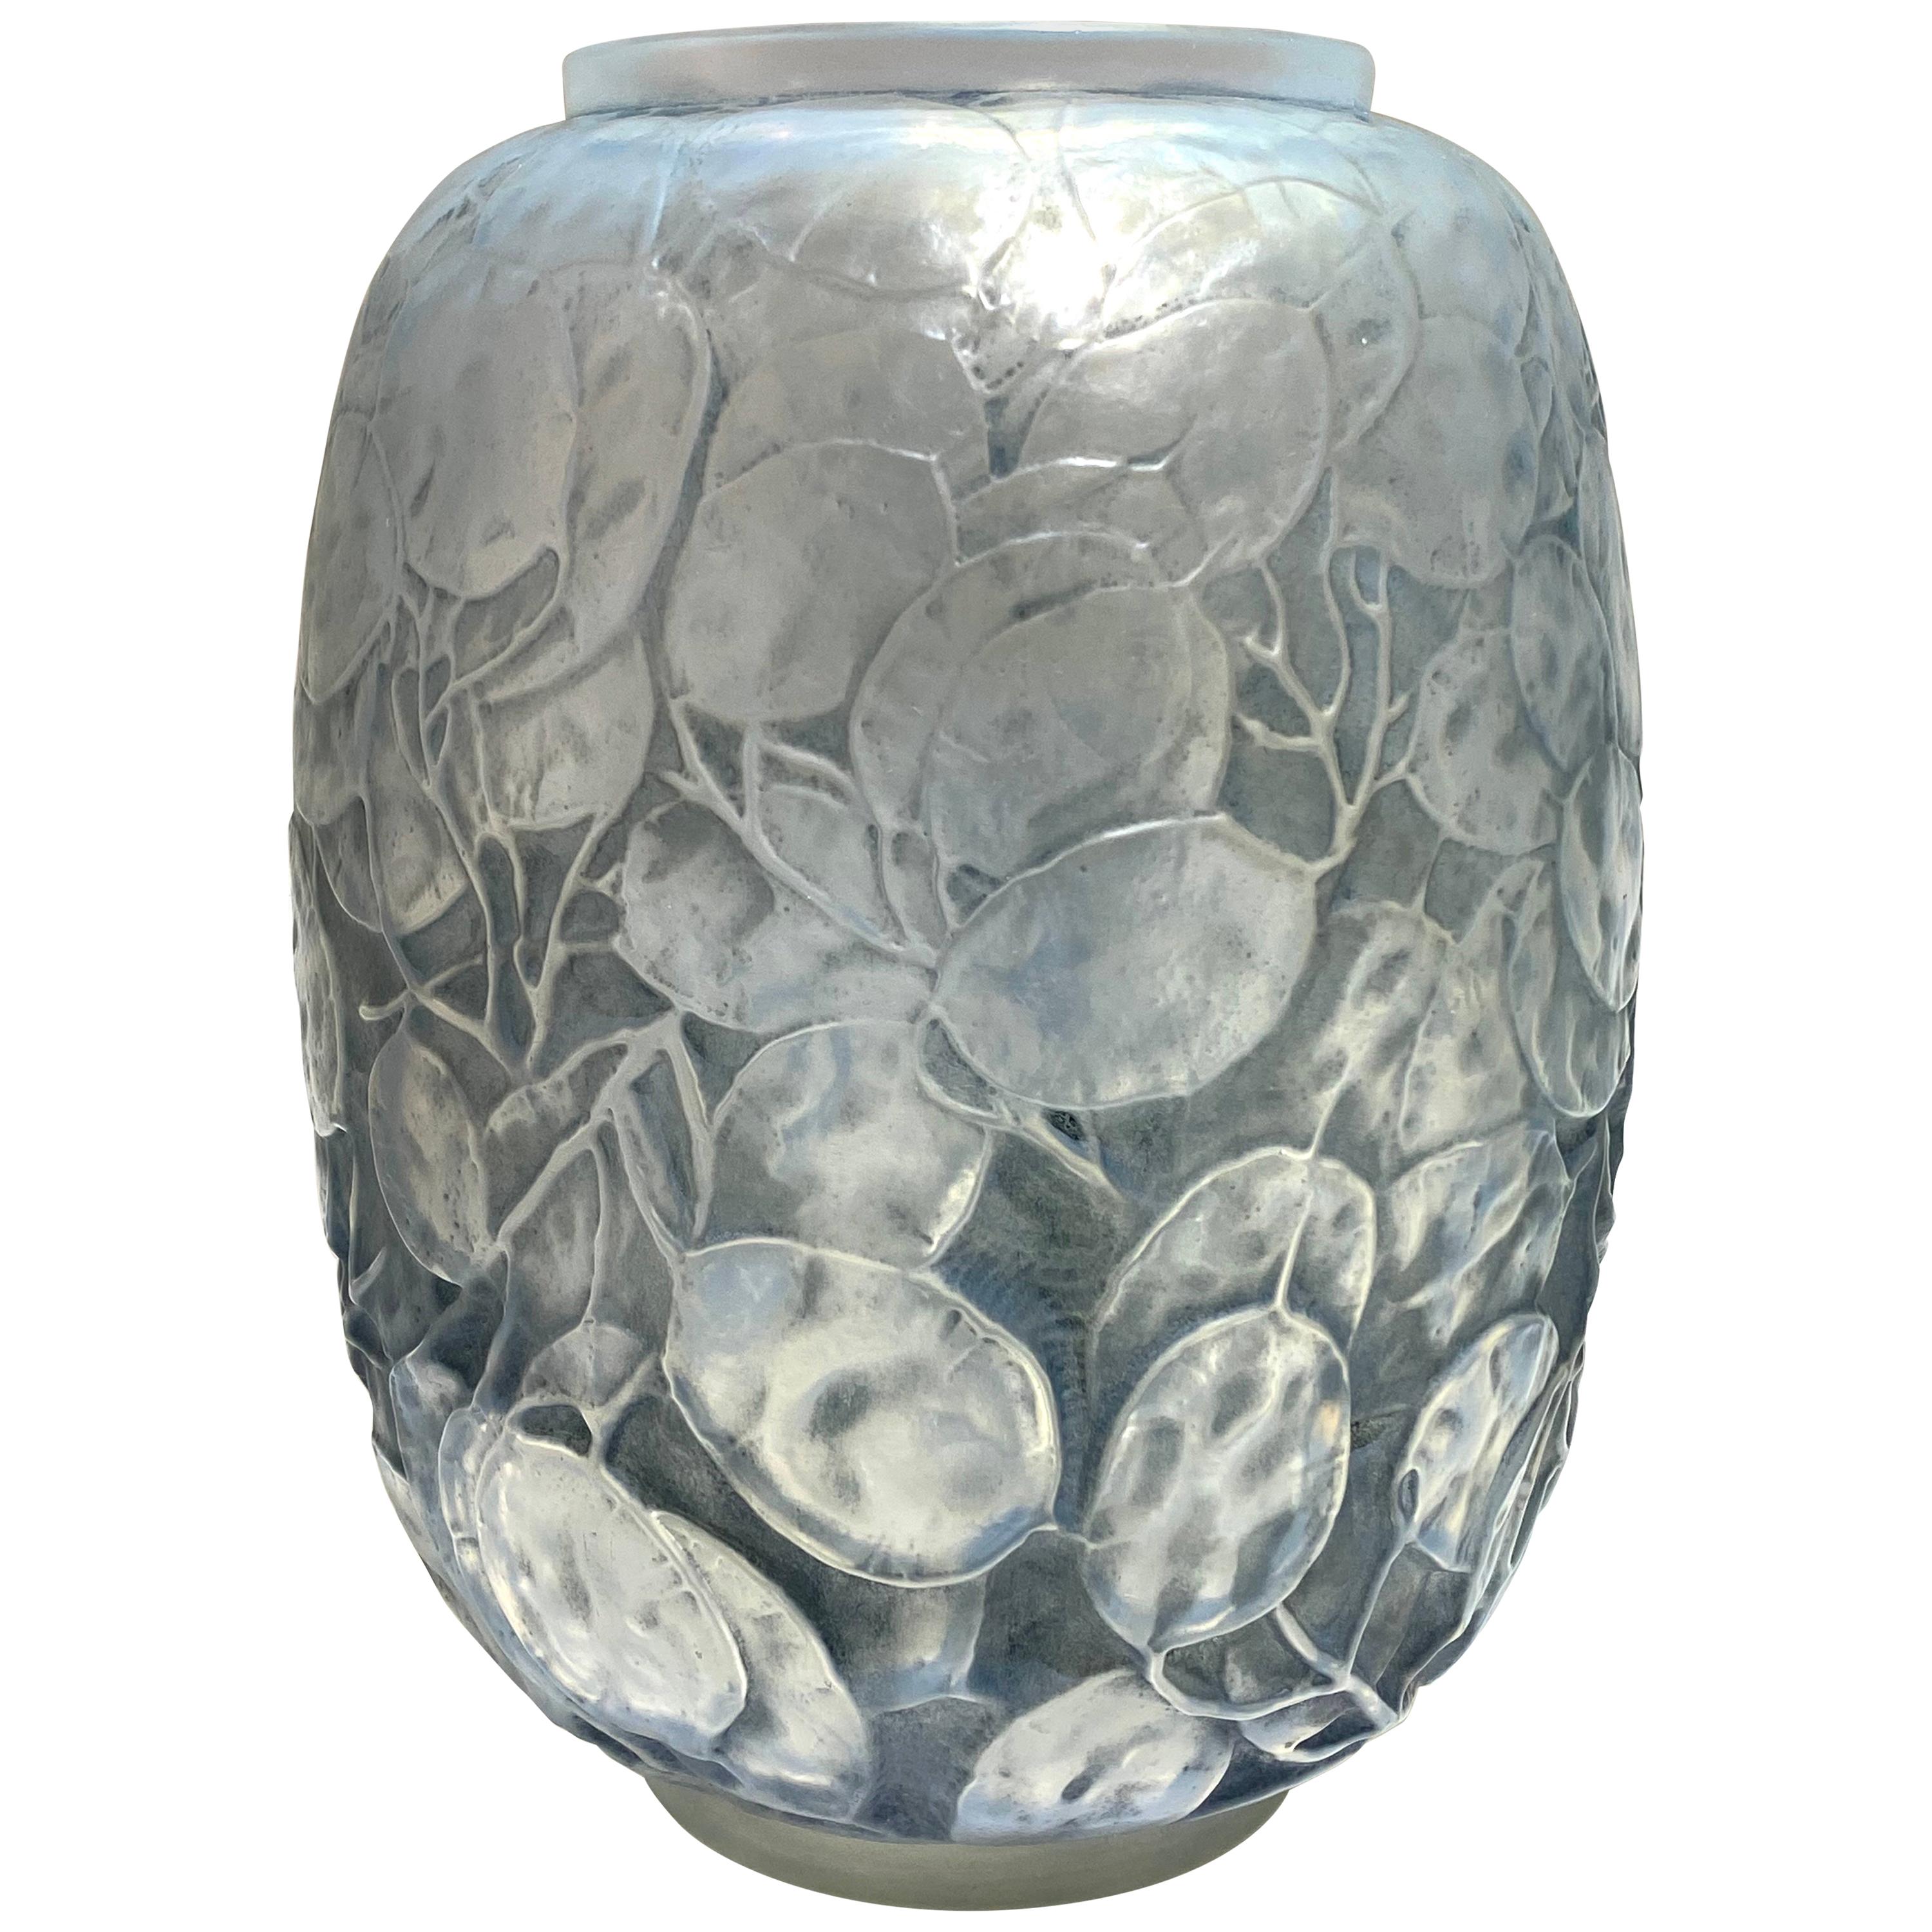 1914 Rene Lalique Monnaie du Pape Vase in Triple Cased Opalescent Glass Patina